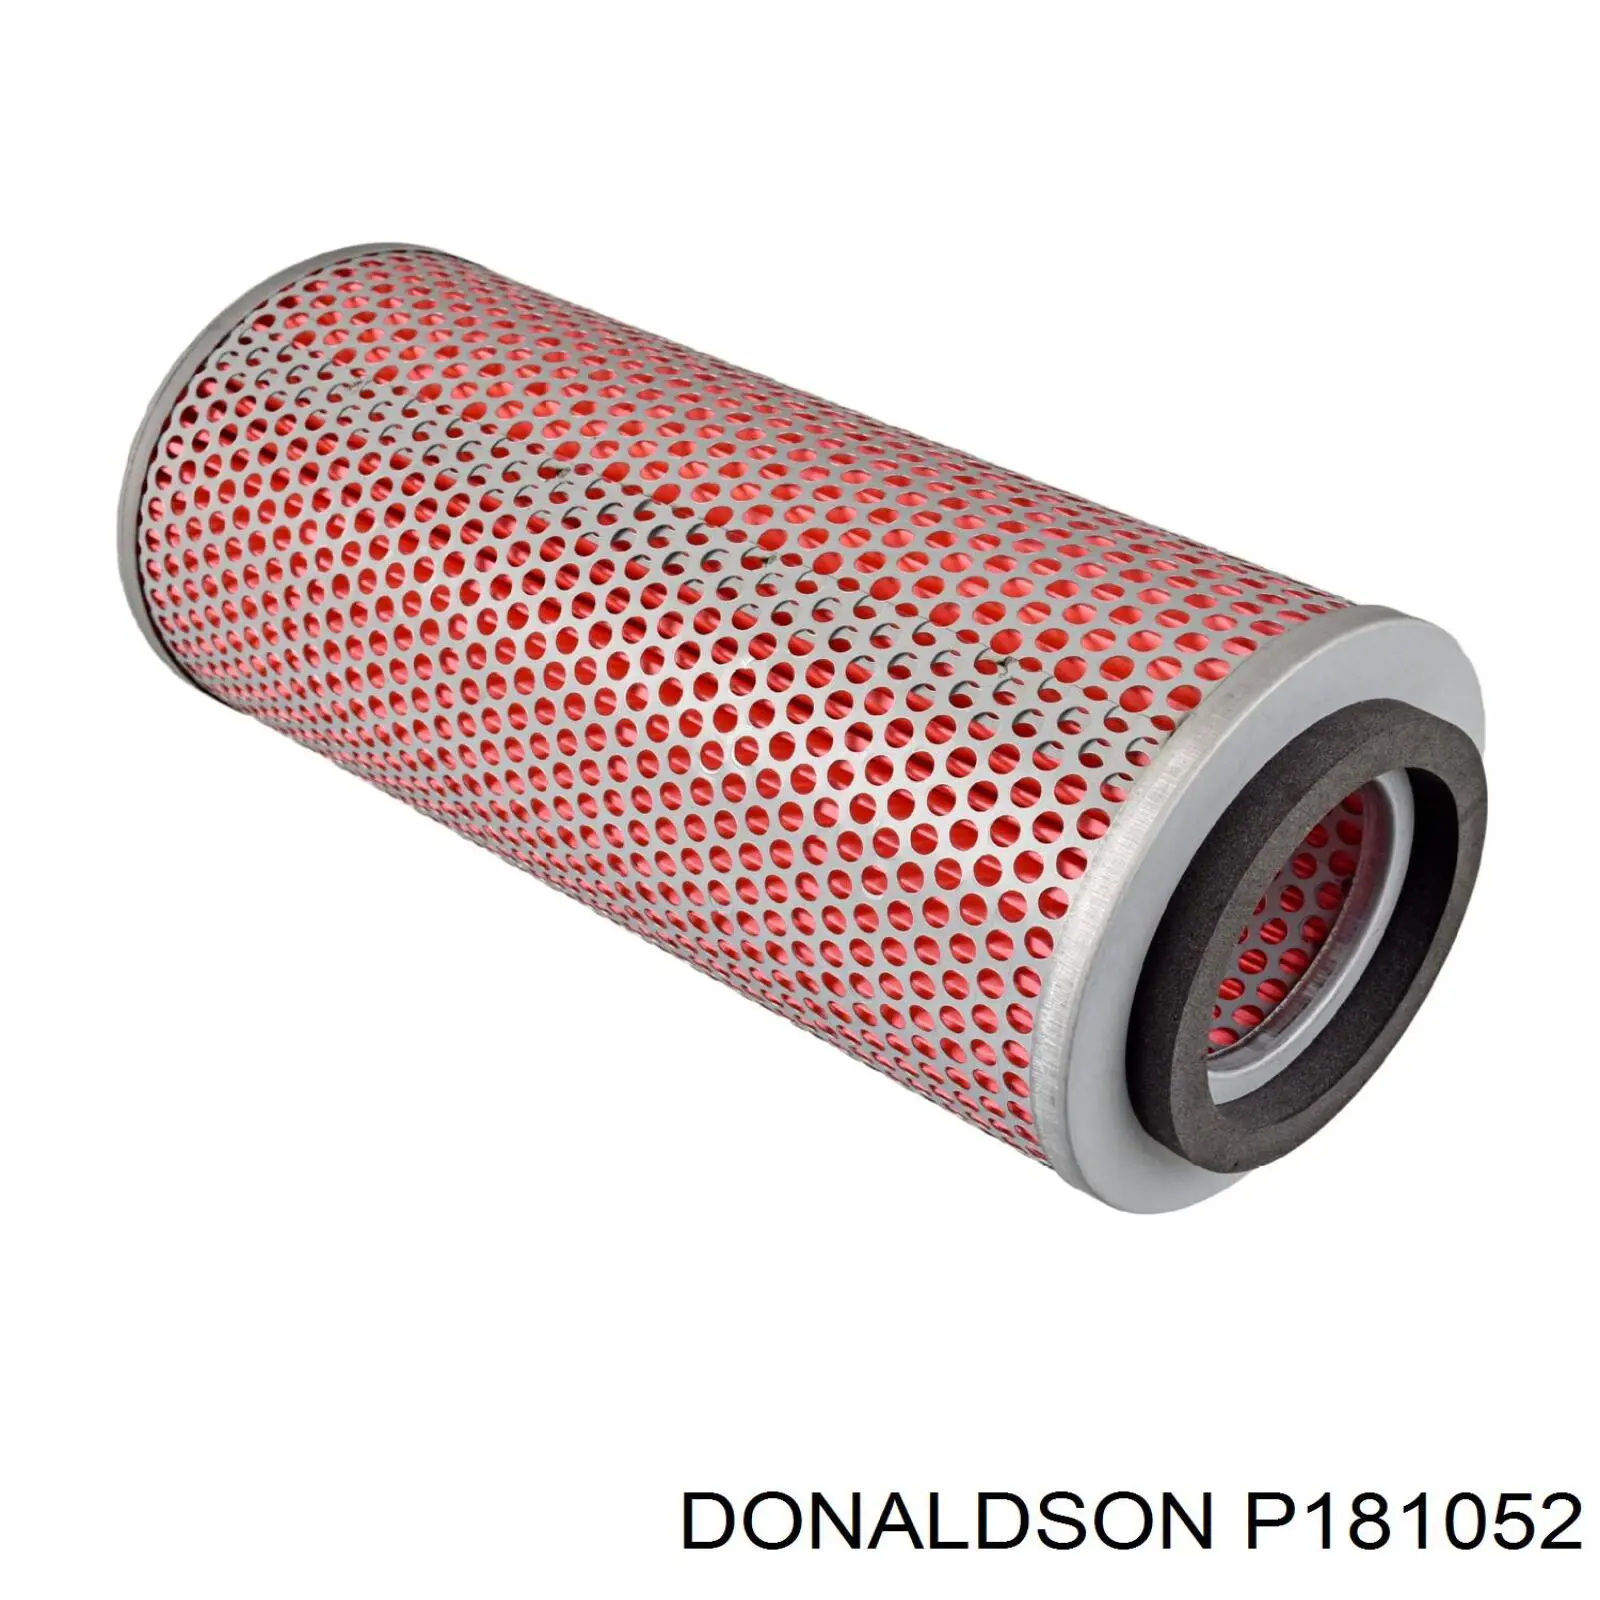 P181052 Donaldson filtro de aire